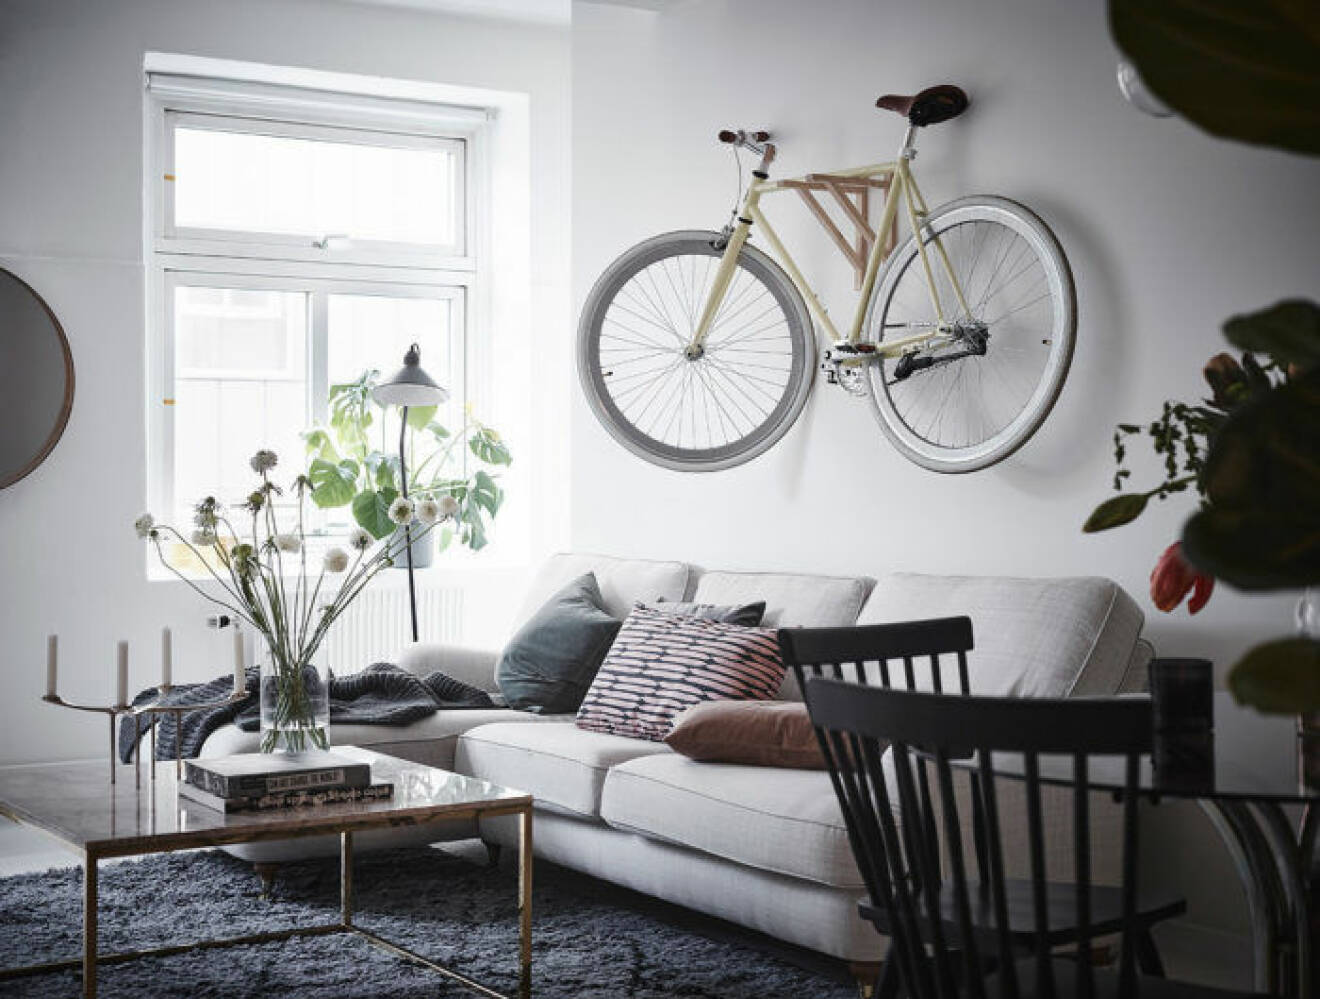 Vardagsrum i skandinavisk stil med en cykel upphängd på väggen